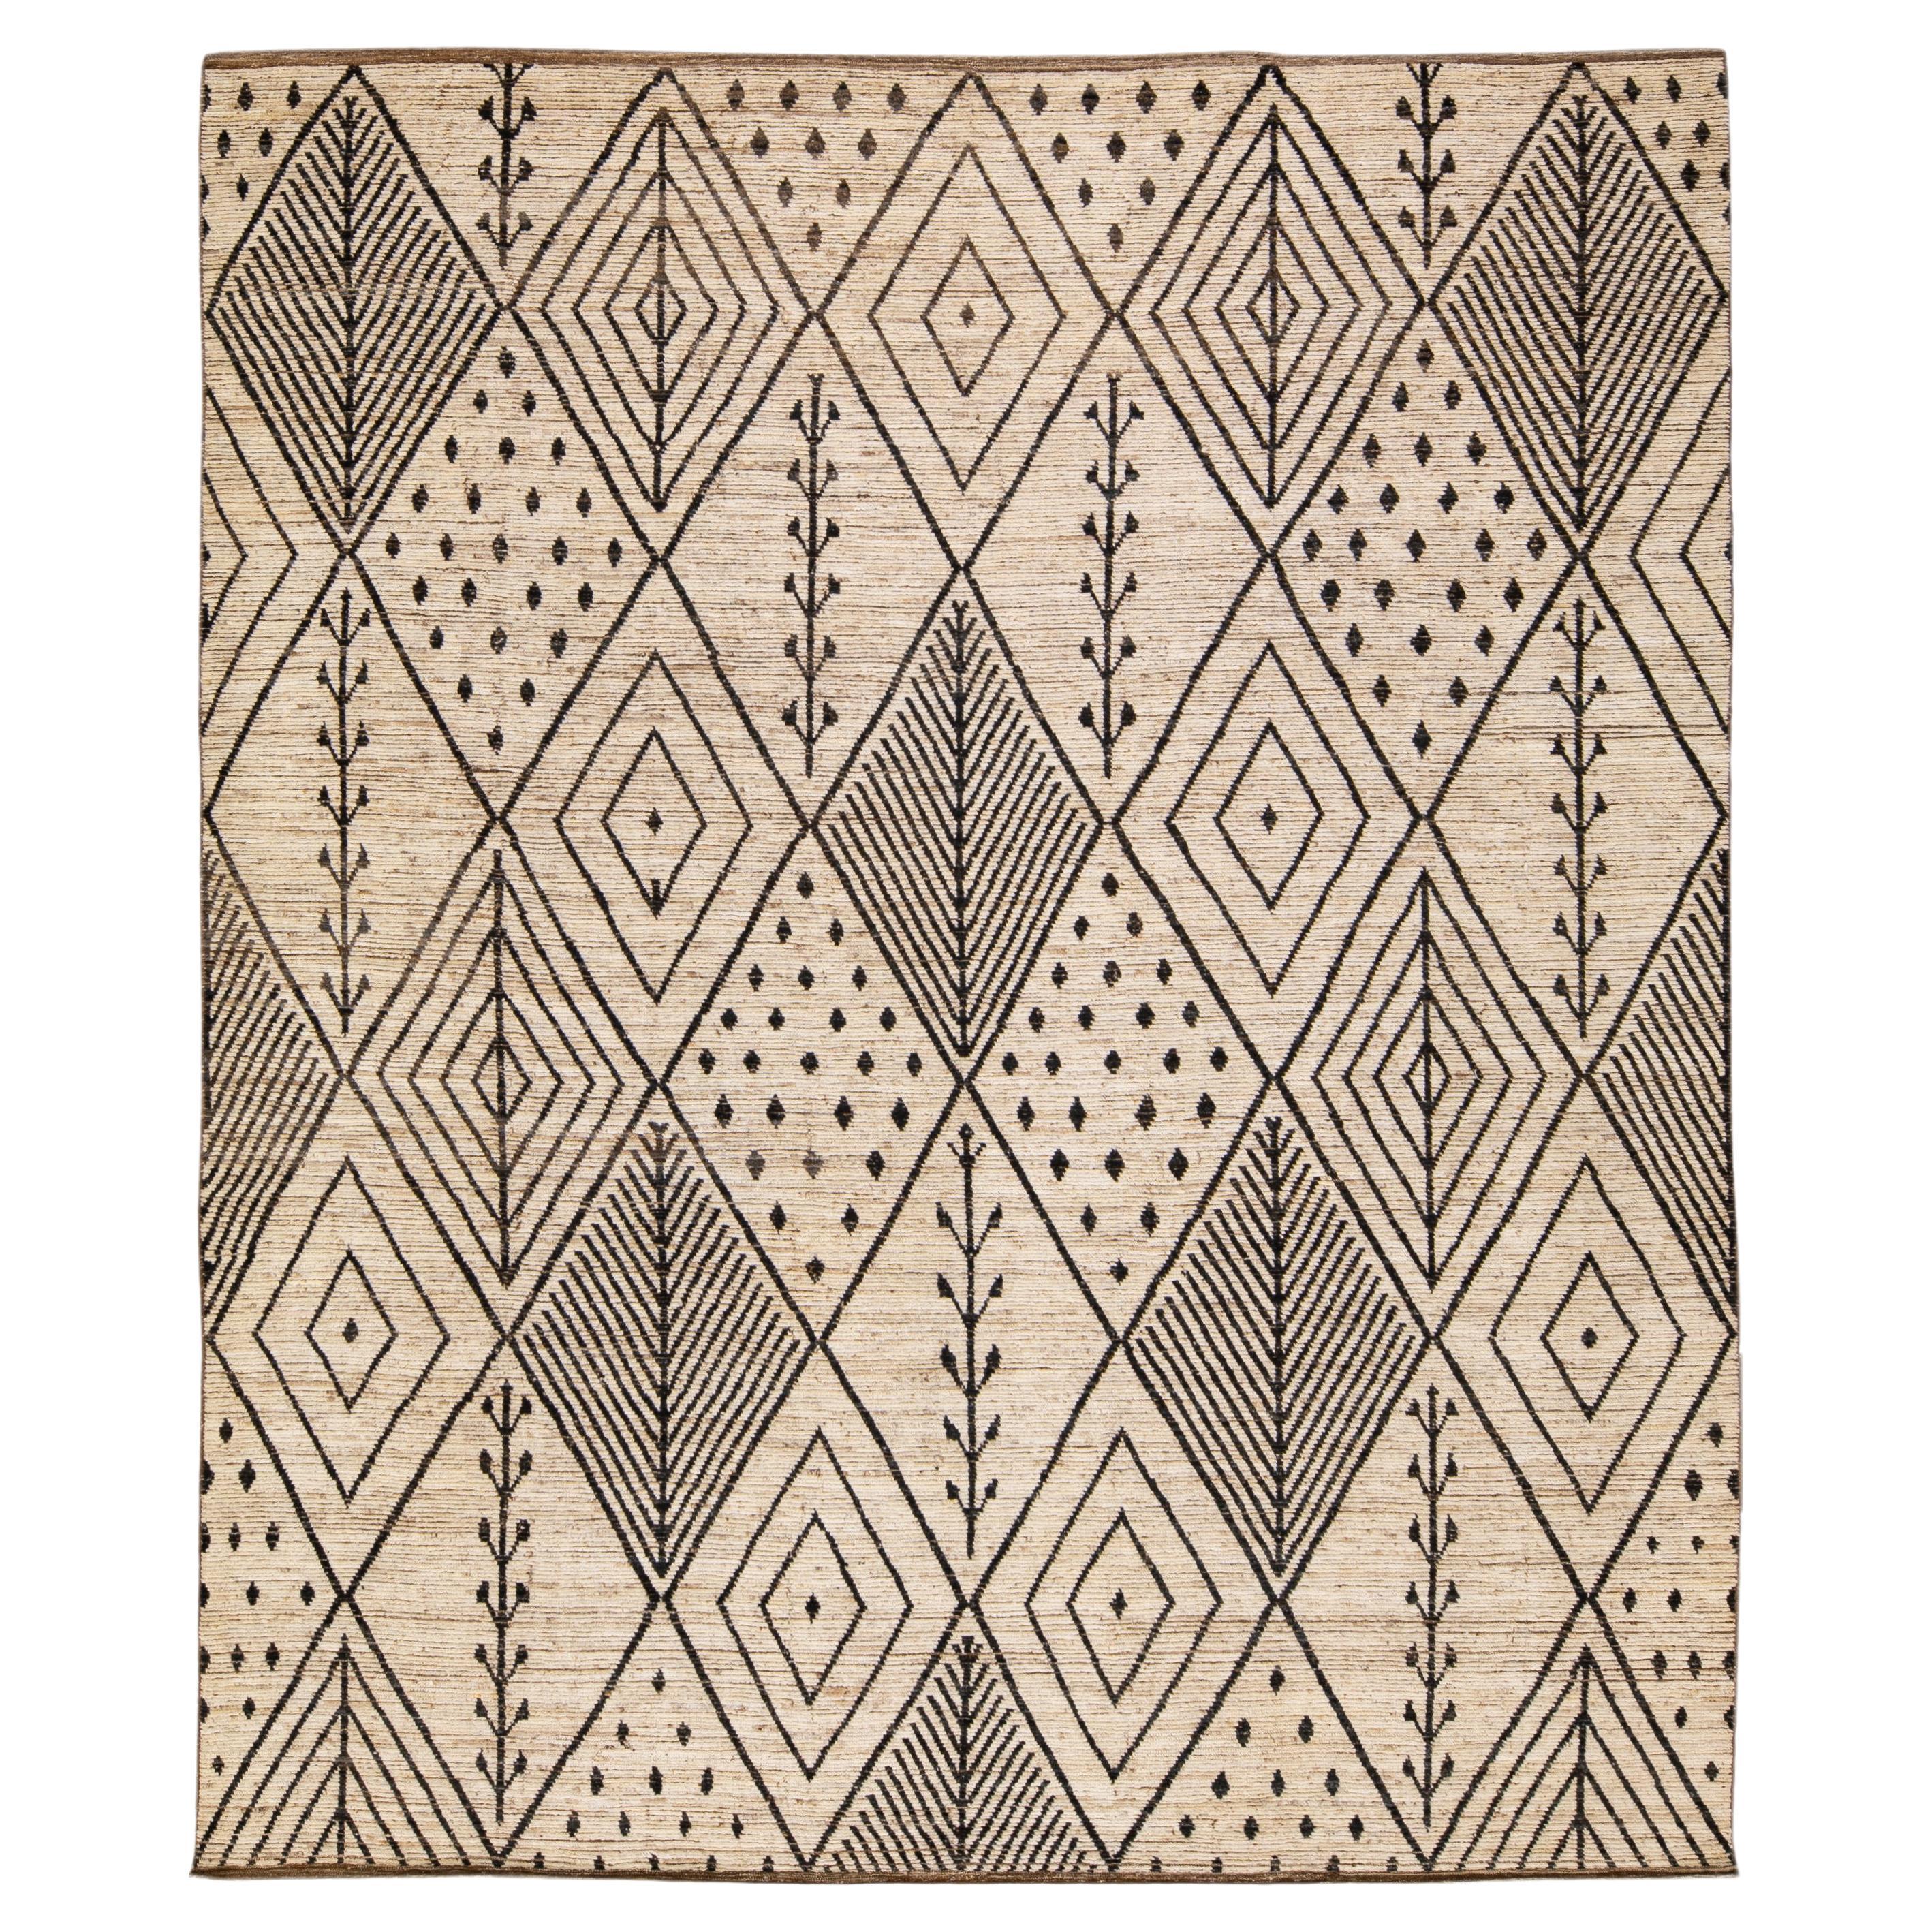 Tapis moderne en laine beige de style marocain Boho, fait à la main et conçu surdimensionné